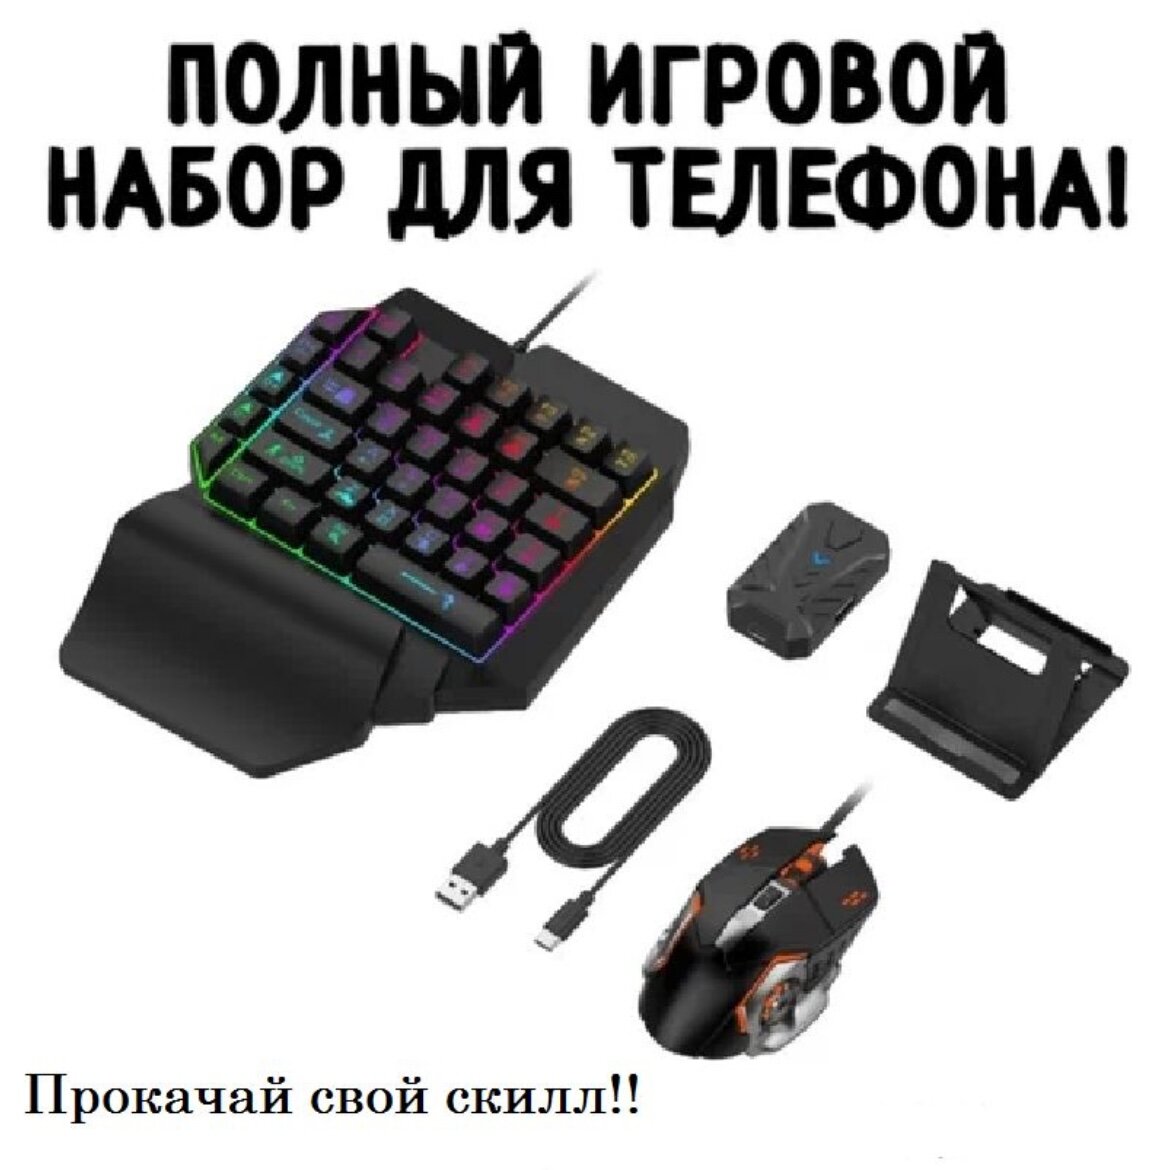 Игровой комплект PUBG - клавиатура, контроллер, мышь и коврик / Чёрный